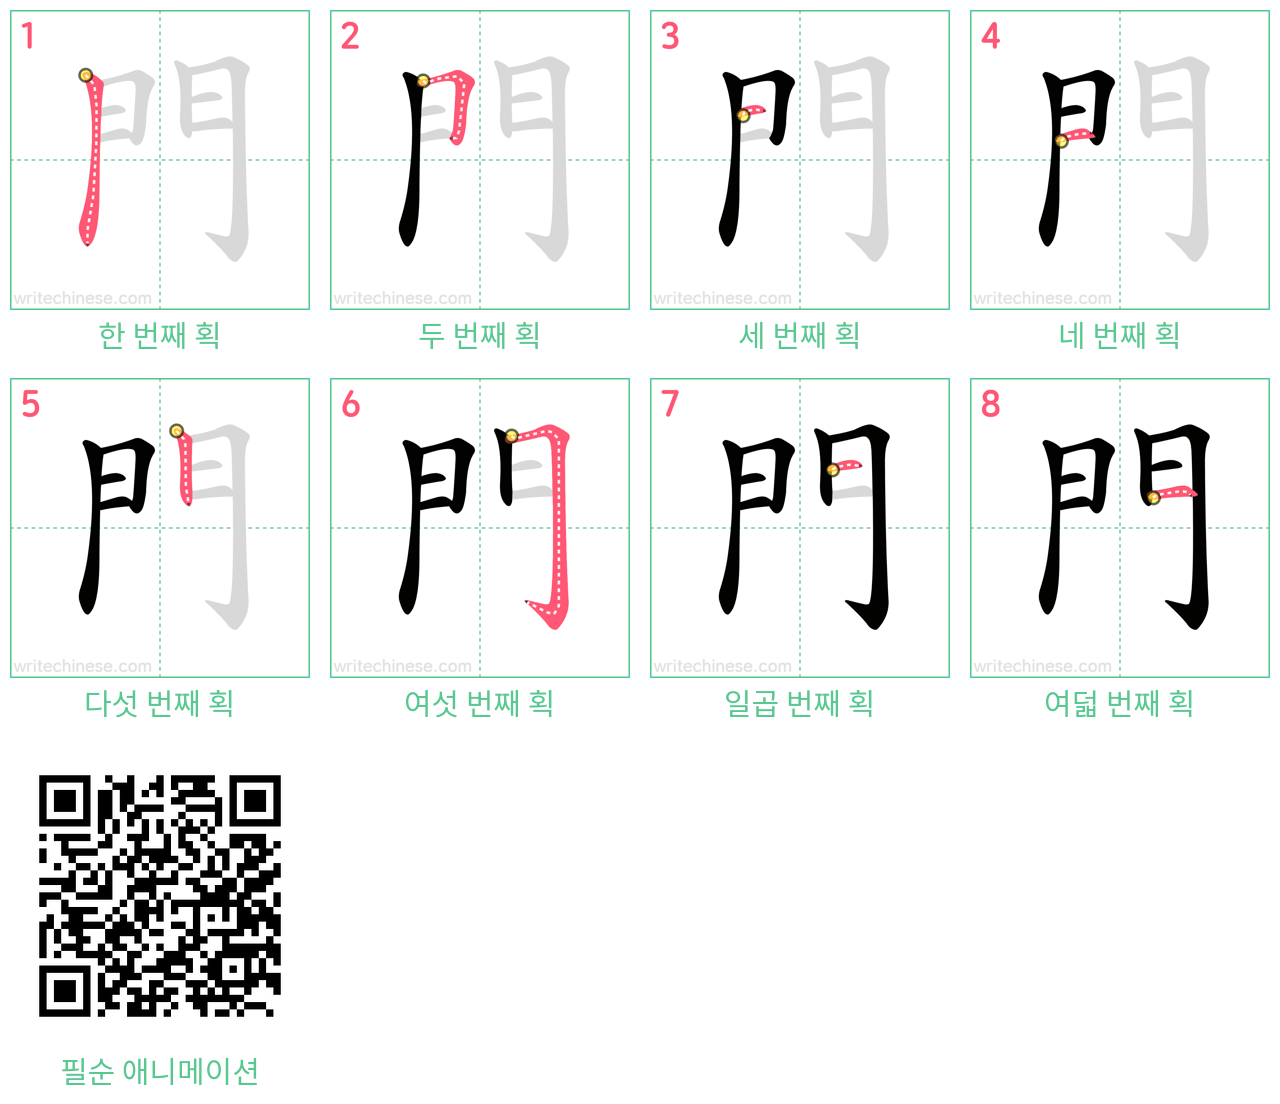 門 step-by-step stroke order diagrams